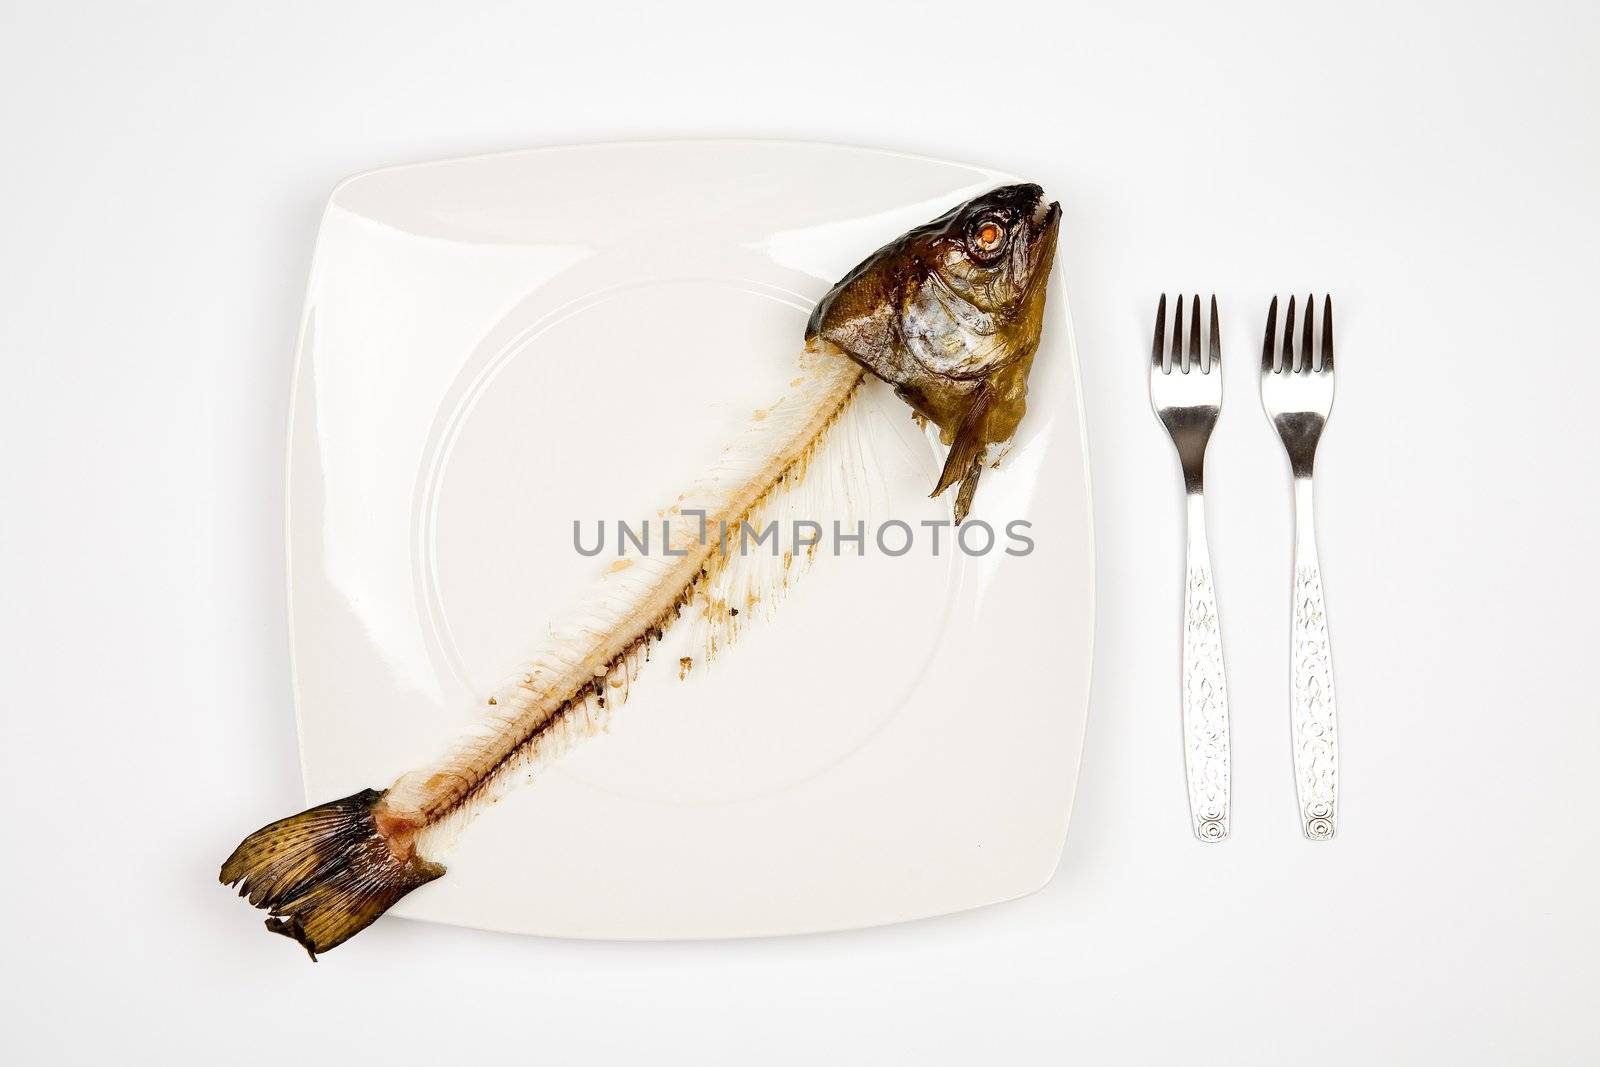 eaten fish by furzyk73